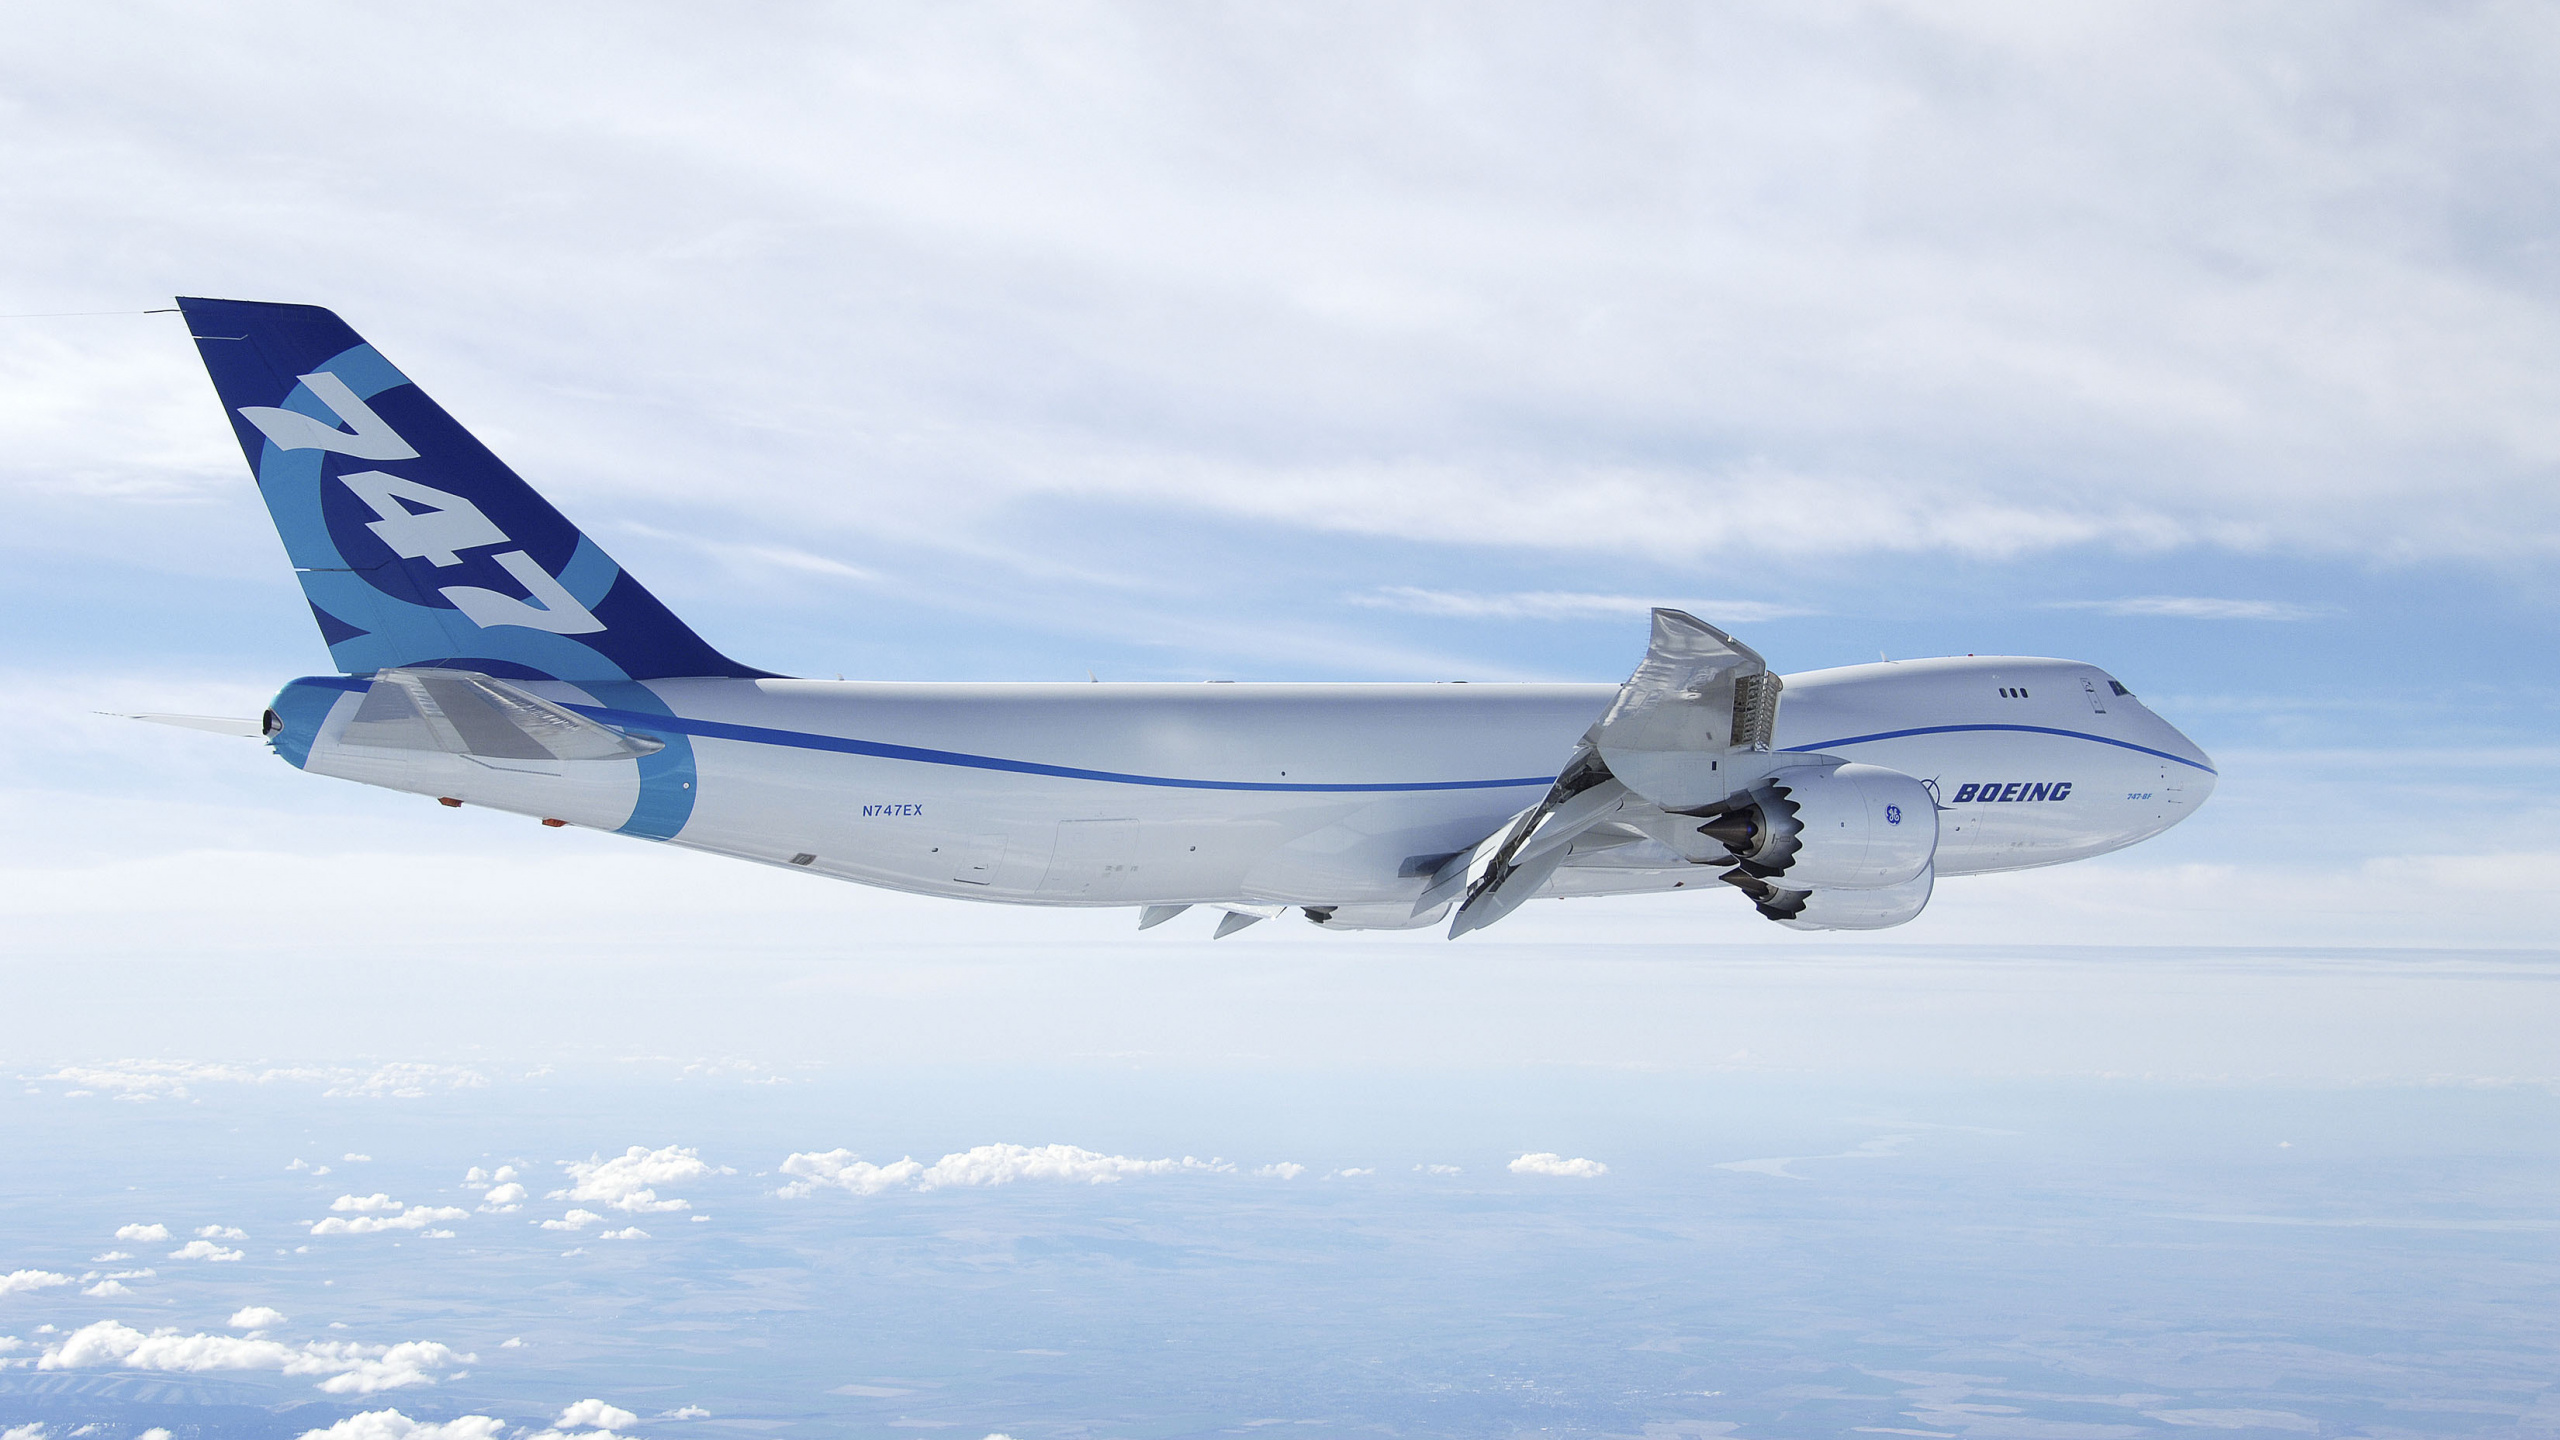 Weißes Und Blaues Flugzeug, Das Tagsüber Über Weiße Wolken Fliegt. Wallpaper in 2560x1440 Resolution